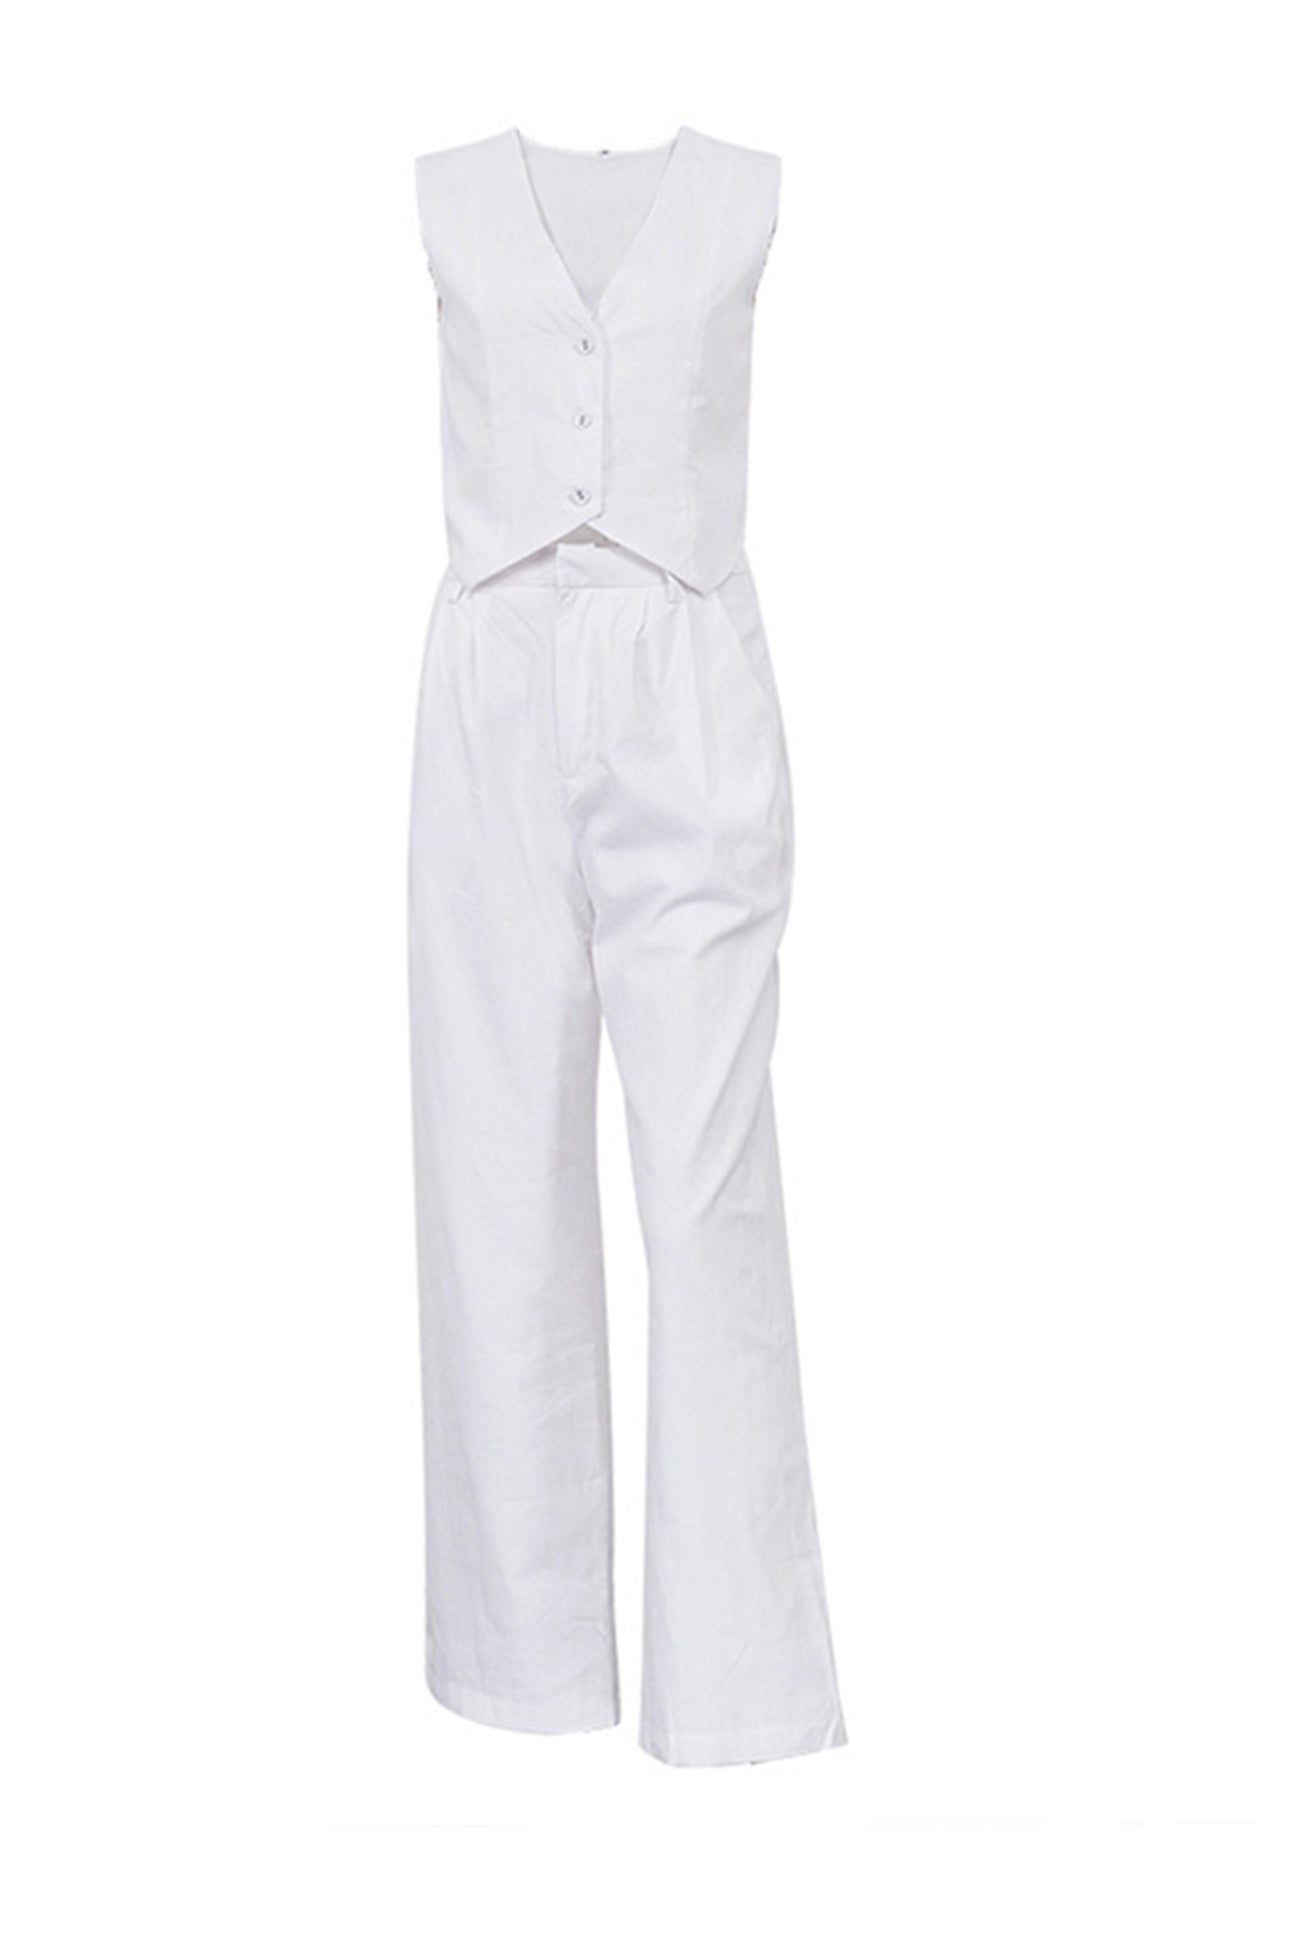 White Button Down Tank Top Long Pants Set